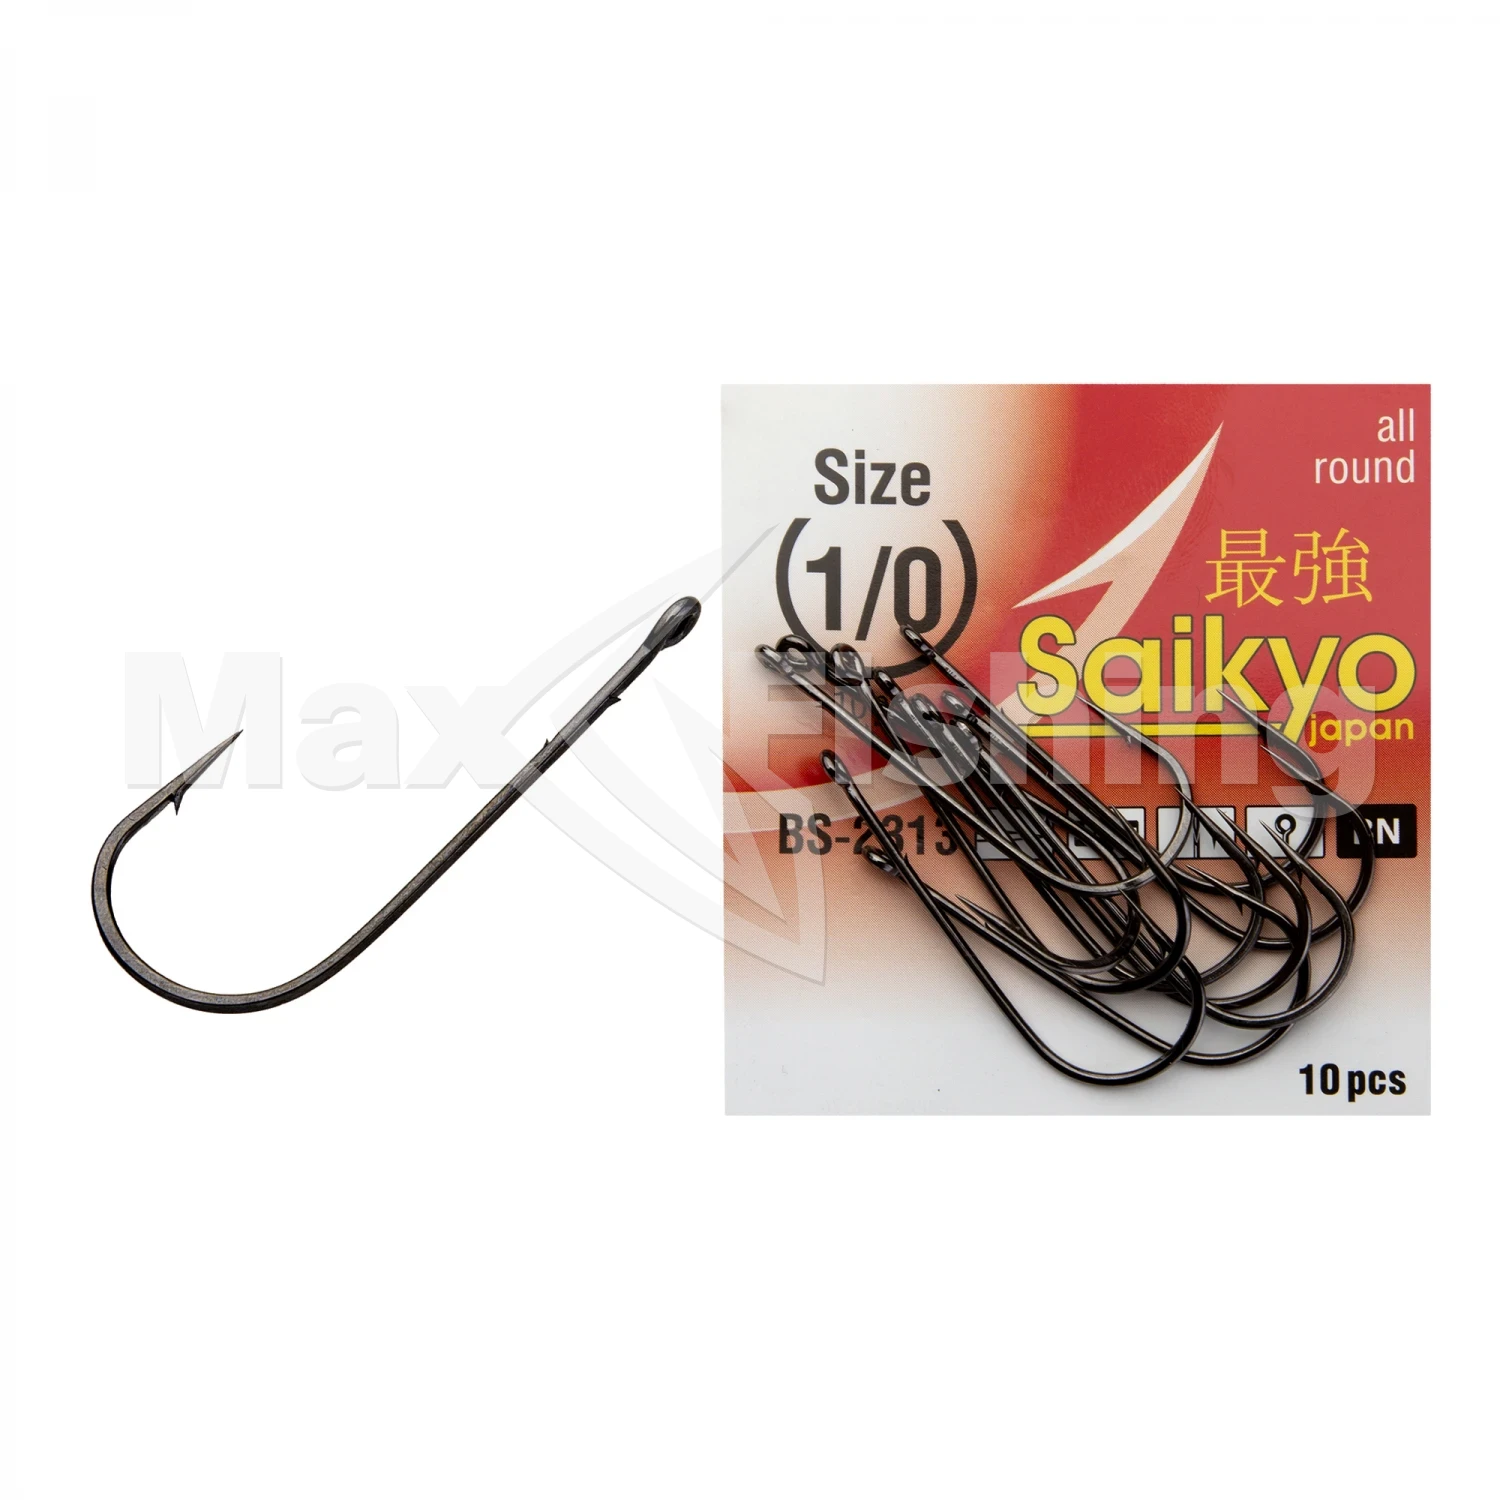 Крючок одинарный Saikyo Bs-2313 Bn #4/0 (10шт)